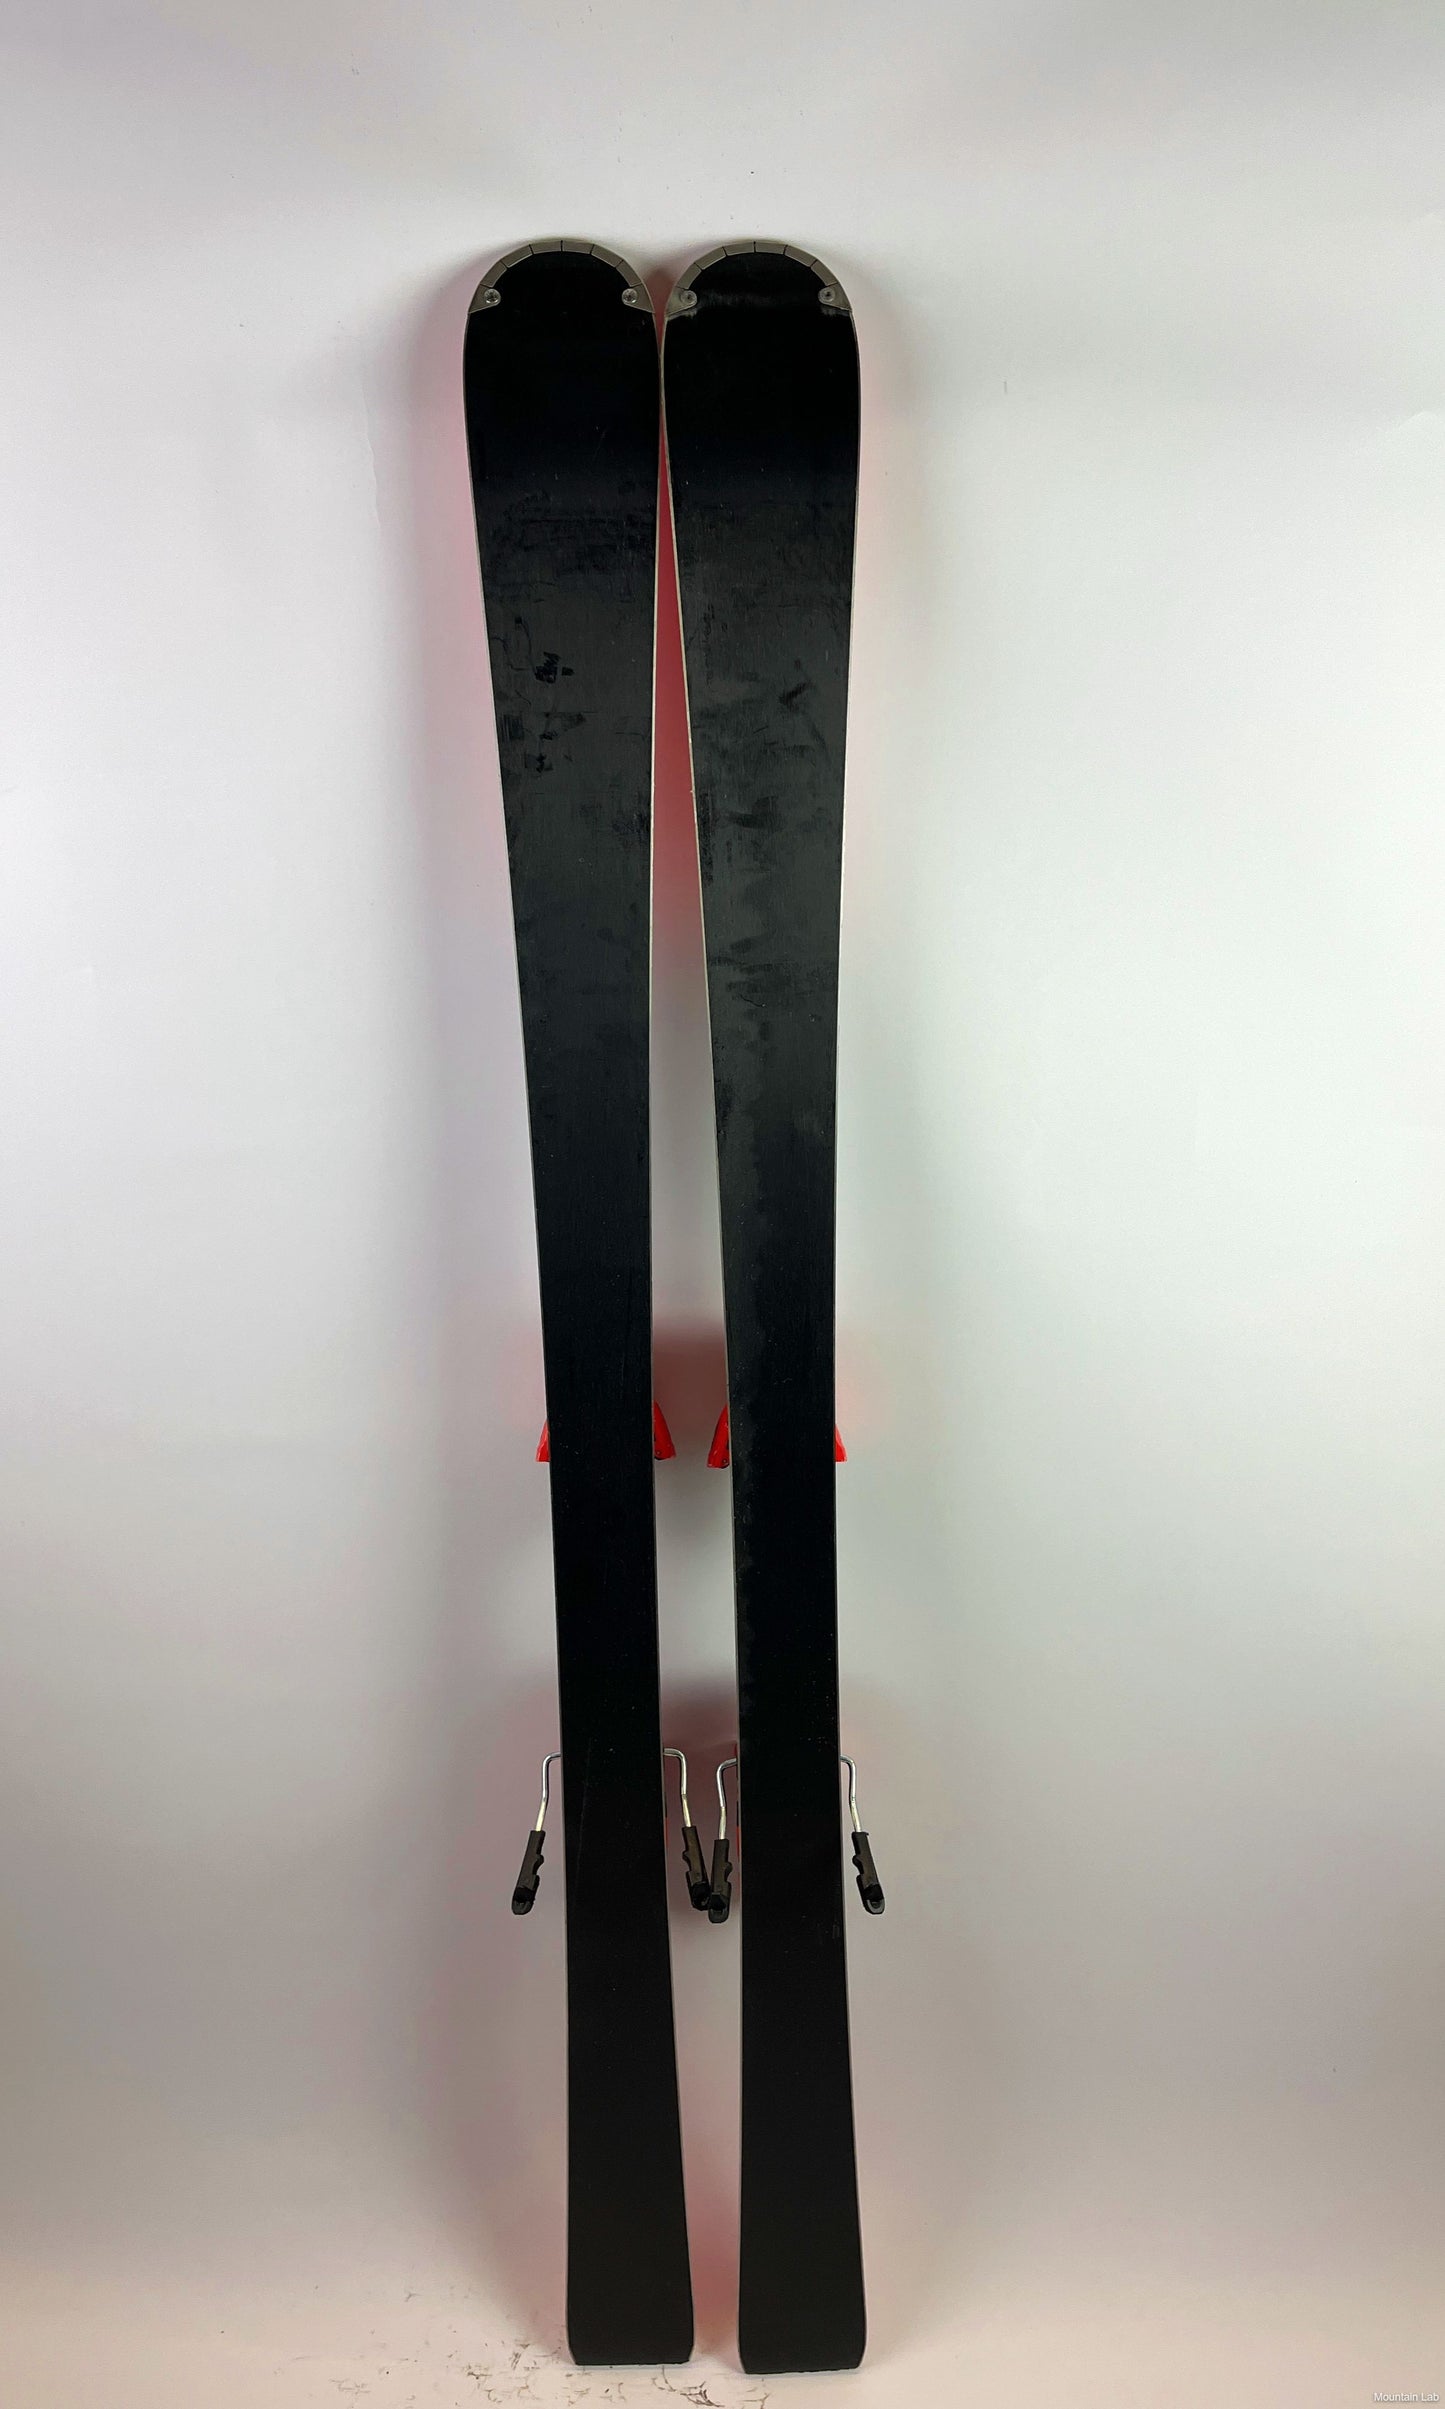 Ski Atomic Redster S7 (2019)